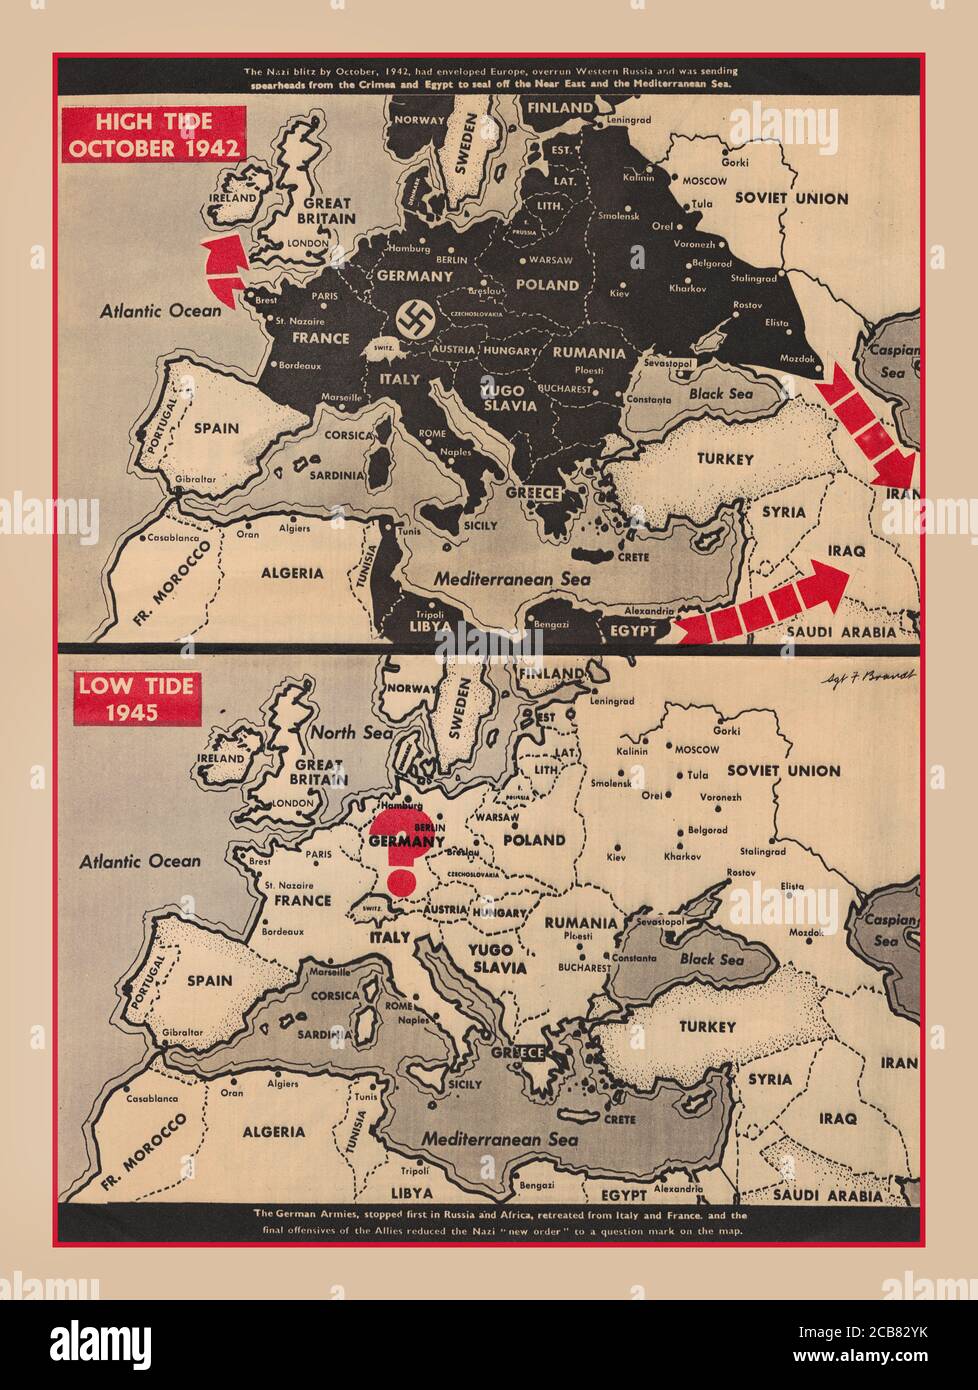 Les cartes de propagande de la Seconde Guerre mondiale de l'Europe des années 1940 publiées dans la Yank, The Army Weekly, célèbrent la reddition de l'Allemagne en mai 1945. La carte du haut, 'High Tide octobre 1942,' montre l'Europe, avec des parties de l'Afrique du Nord, en noir nazi. « en octobre 1942, le blitz nazi avait enveloppé l'Europe, dépassé la Russie occidentale et envoyait des fers de lance de la Crimée et de l'Égypte pour sceller le proche-Orient et la mer Méditerranée. » La carte du bas, 'Low Tide 1945', montre la carte entière en blanc, et la croix gammée nazie est remplacée par un point d'interrogation rouge au-dessus de l'Allemagne. « les armées allemandes, s'arrêtèrent d'abord en Russie, en Afrique, puis en Italie et en France Banque D'Images